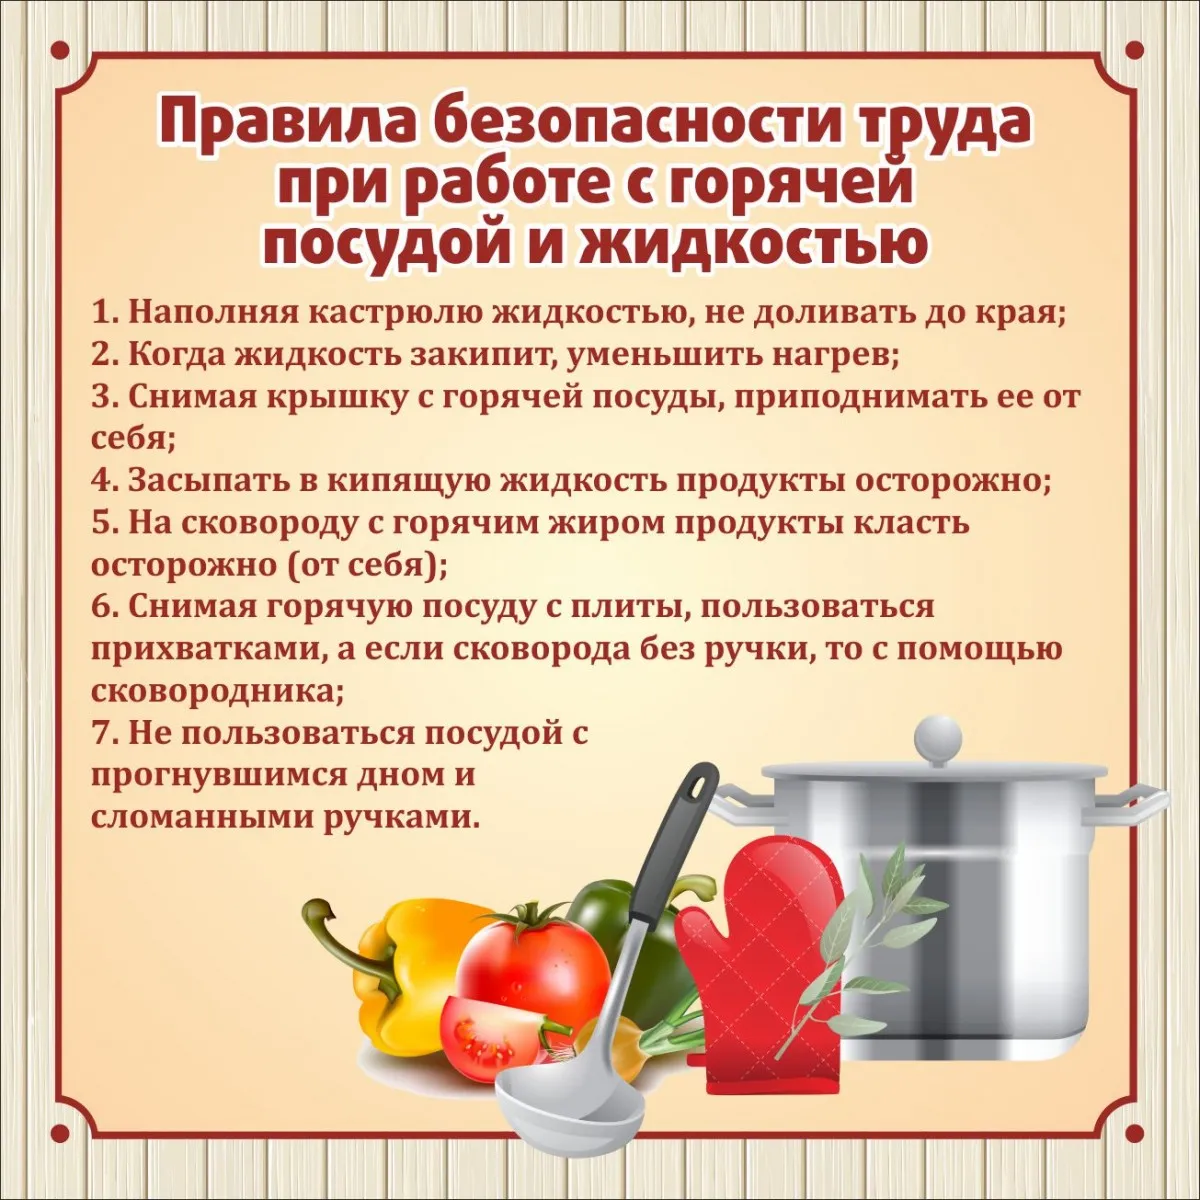 Правила безопасной работы с горячей посудой